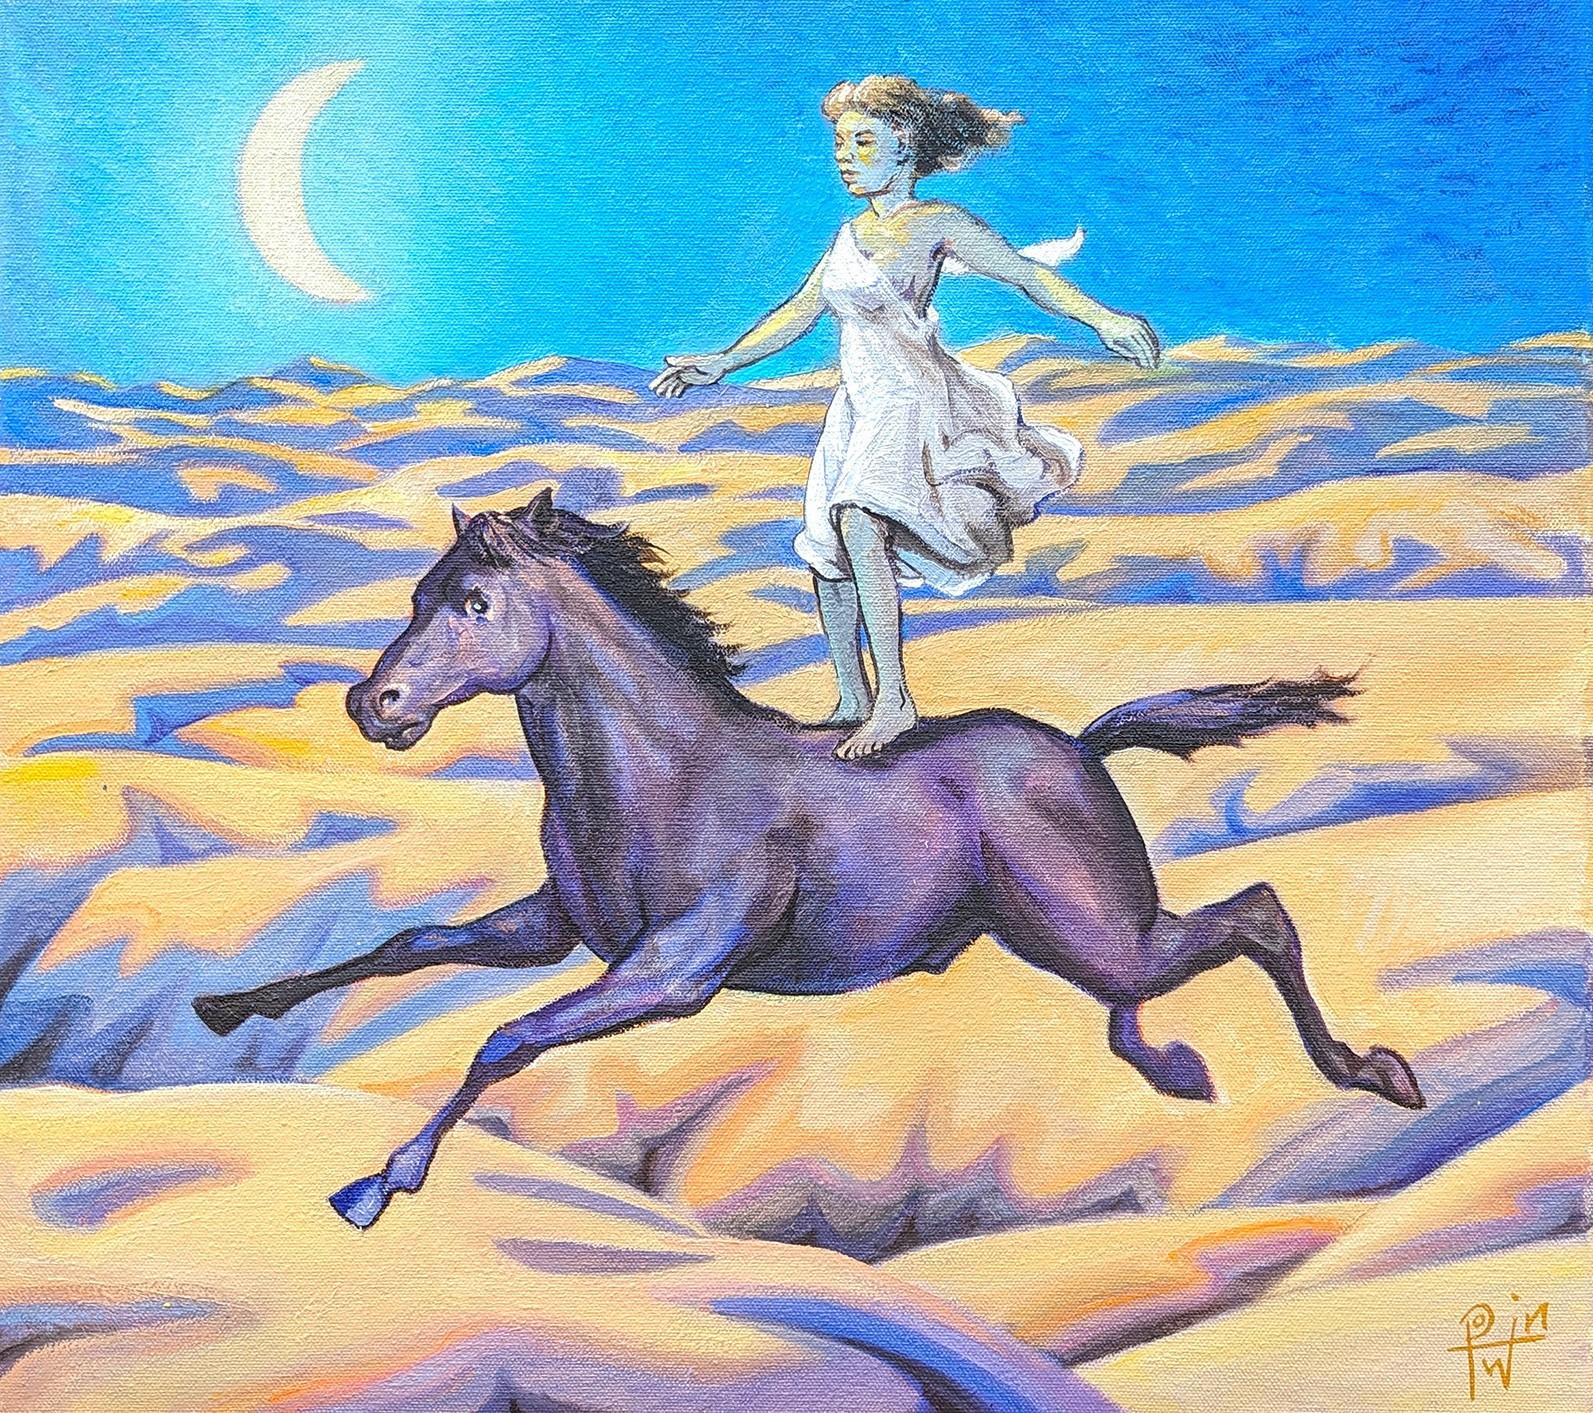 Farbenfrohes, blau und gelb getöntes Gemälde des zeitgenössischen Künstlers Henry David Potwin. Das Werk zeigt eine Frau in einem weißen, fließenden Kleid, die auf einem Pferd durch eine nächtliche Wüstenlandschaft reitet. Signiert in der rechten